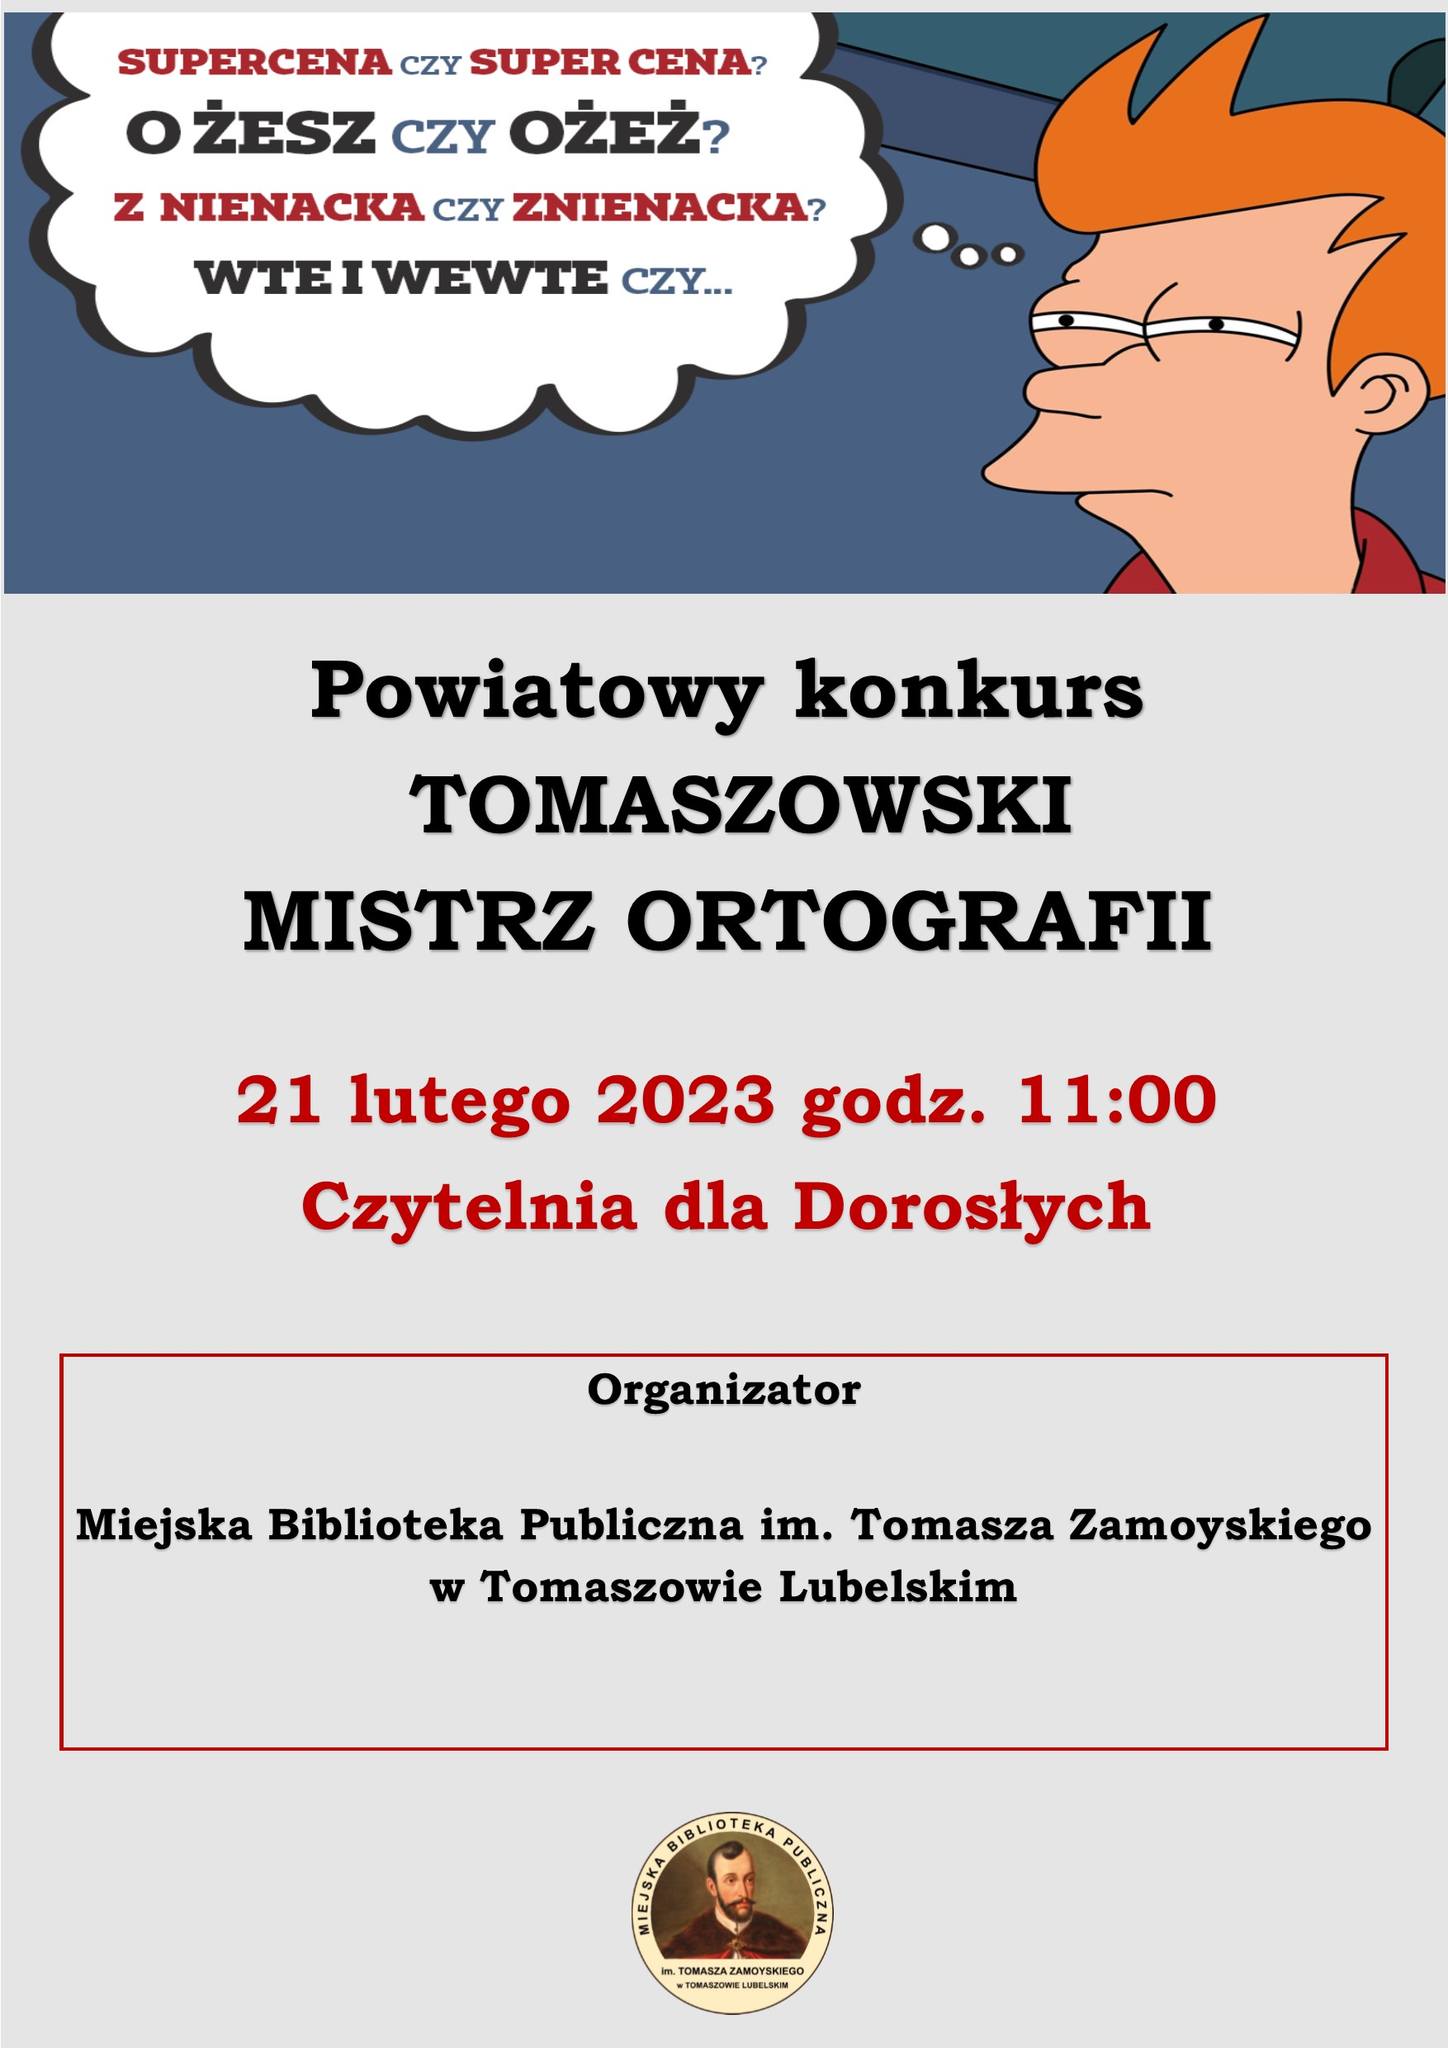 Powiatowy konkurs "Tomaszowski Mistrz Ortografii